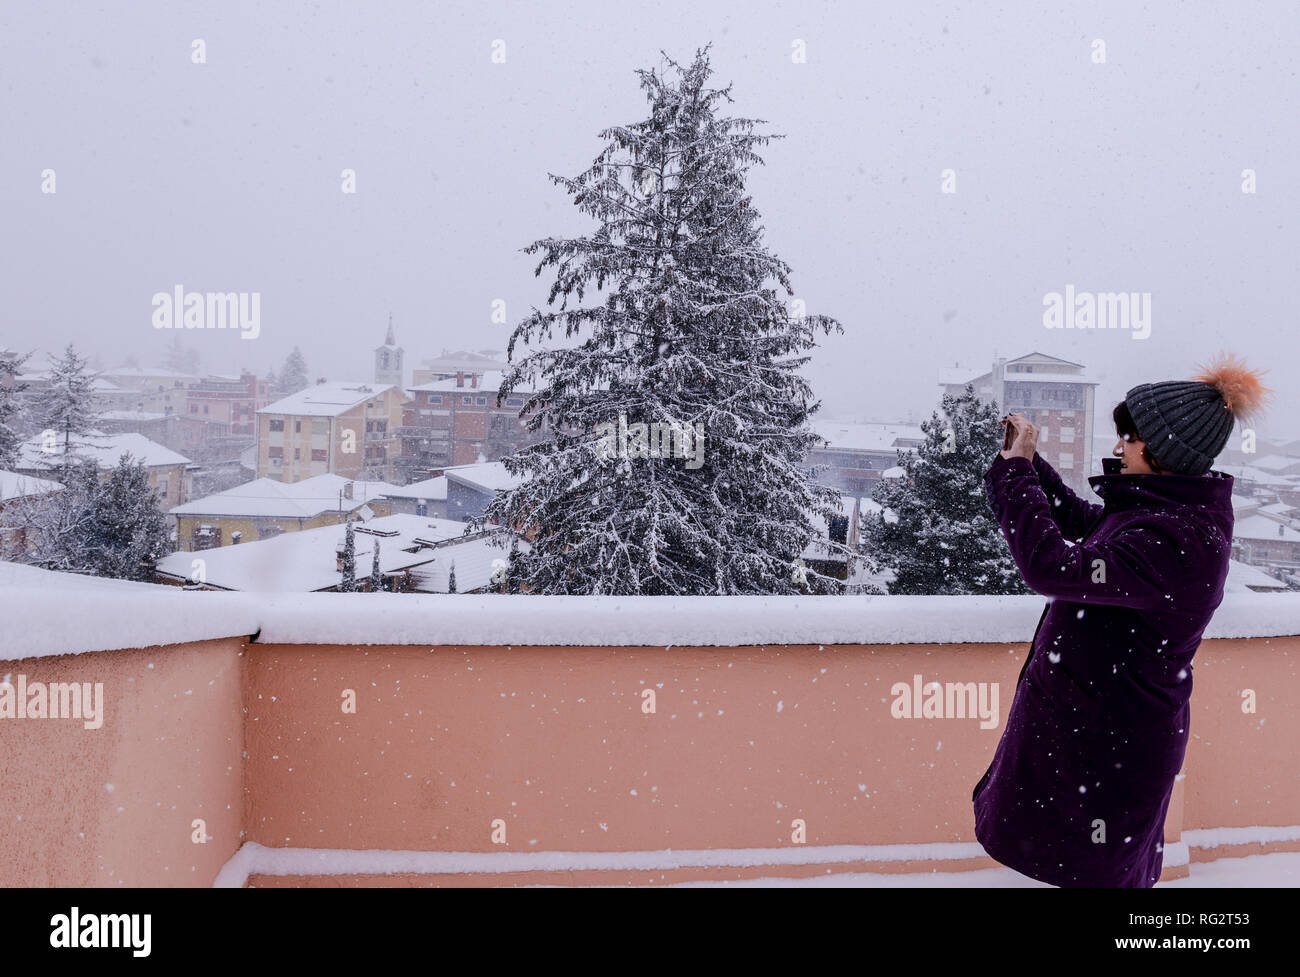 Frau im Freien, auf dem Balkon, machen Fotos der schneebedeckten malerische Aussicht, bei Schneesturm, Avezzano, Abruzzen, Italien, Europa Stockfoto